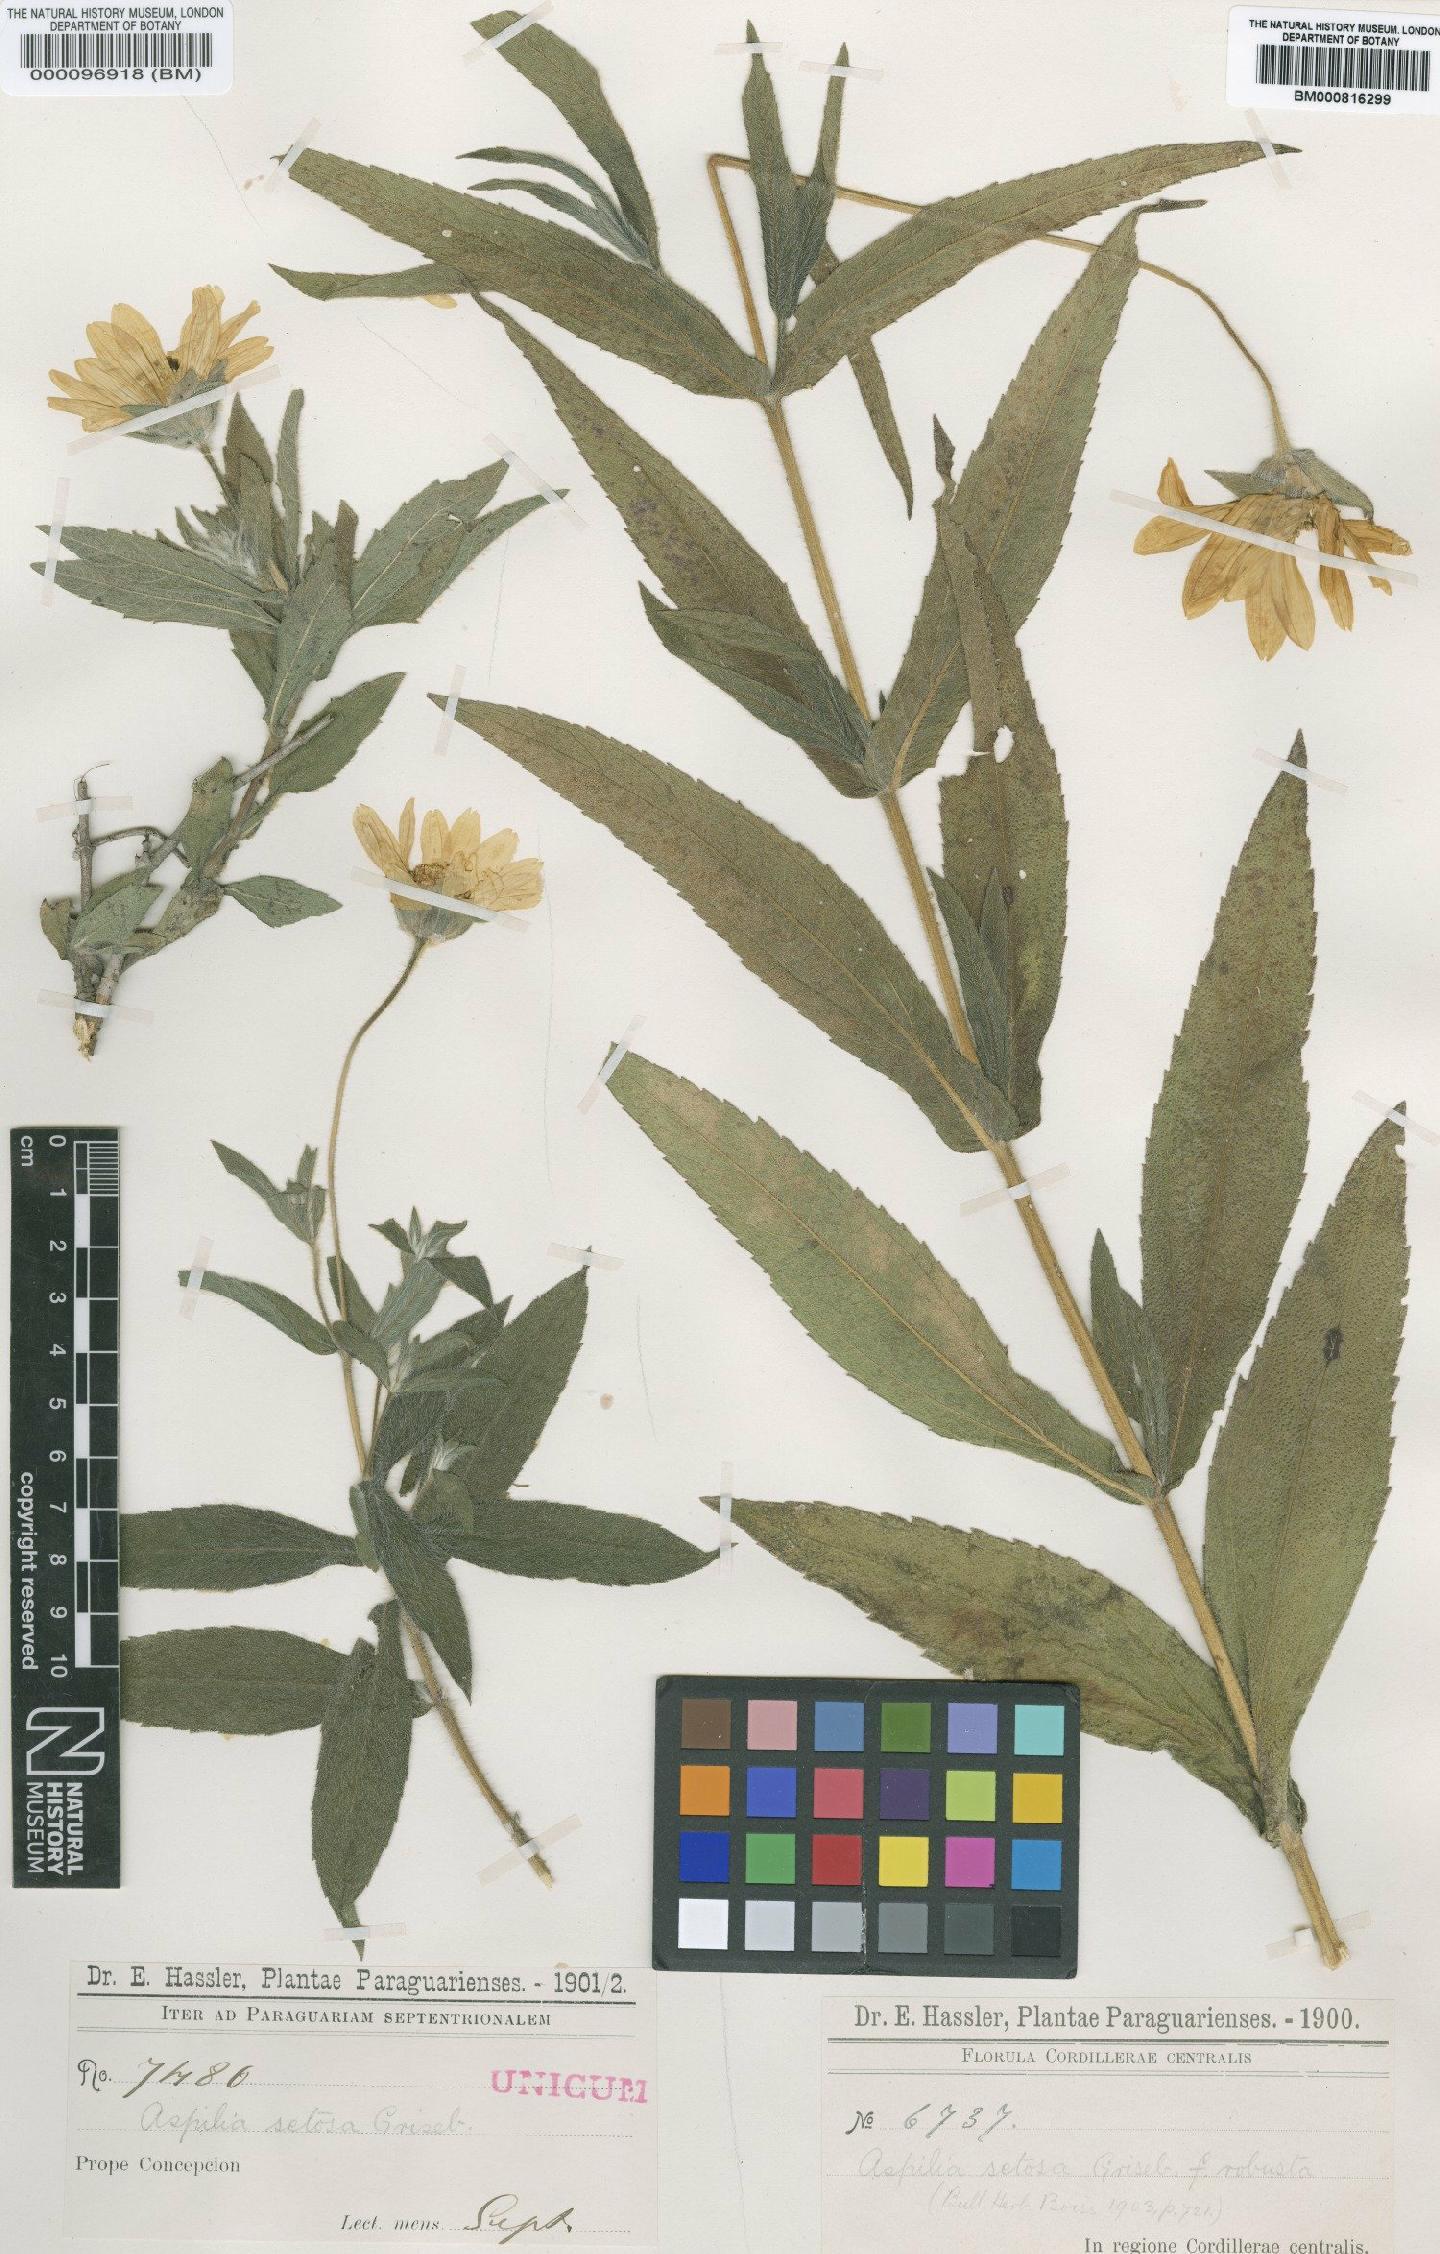 To NHMUK collection (Aspilia setosa Griseb.; Type; NHMUK:ecatalogue:4566407)